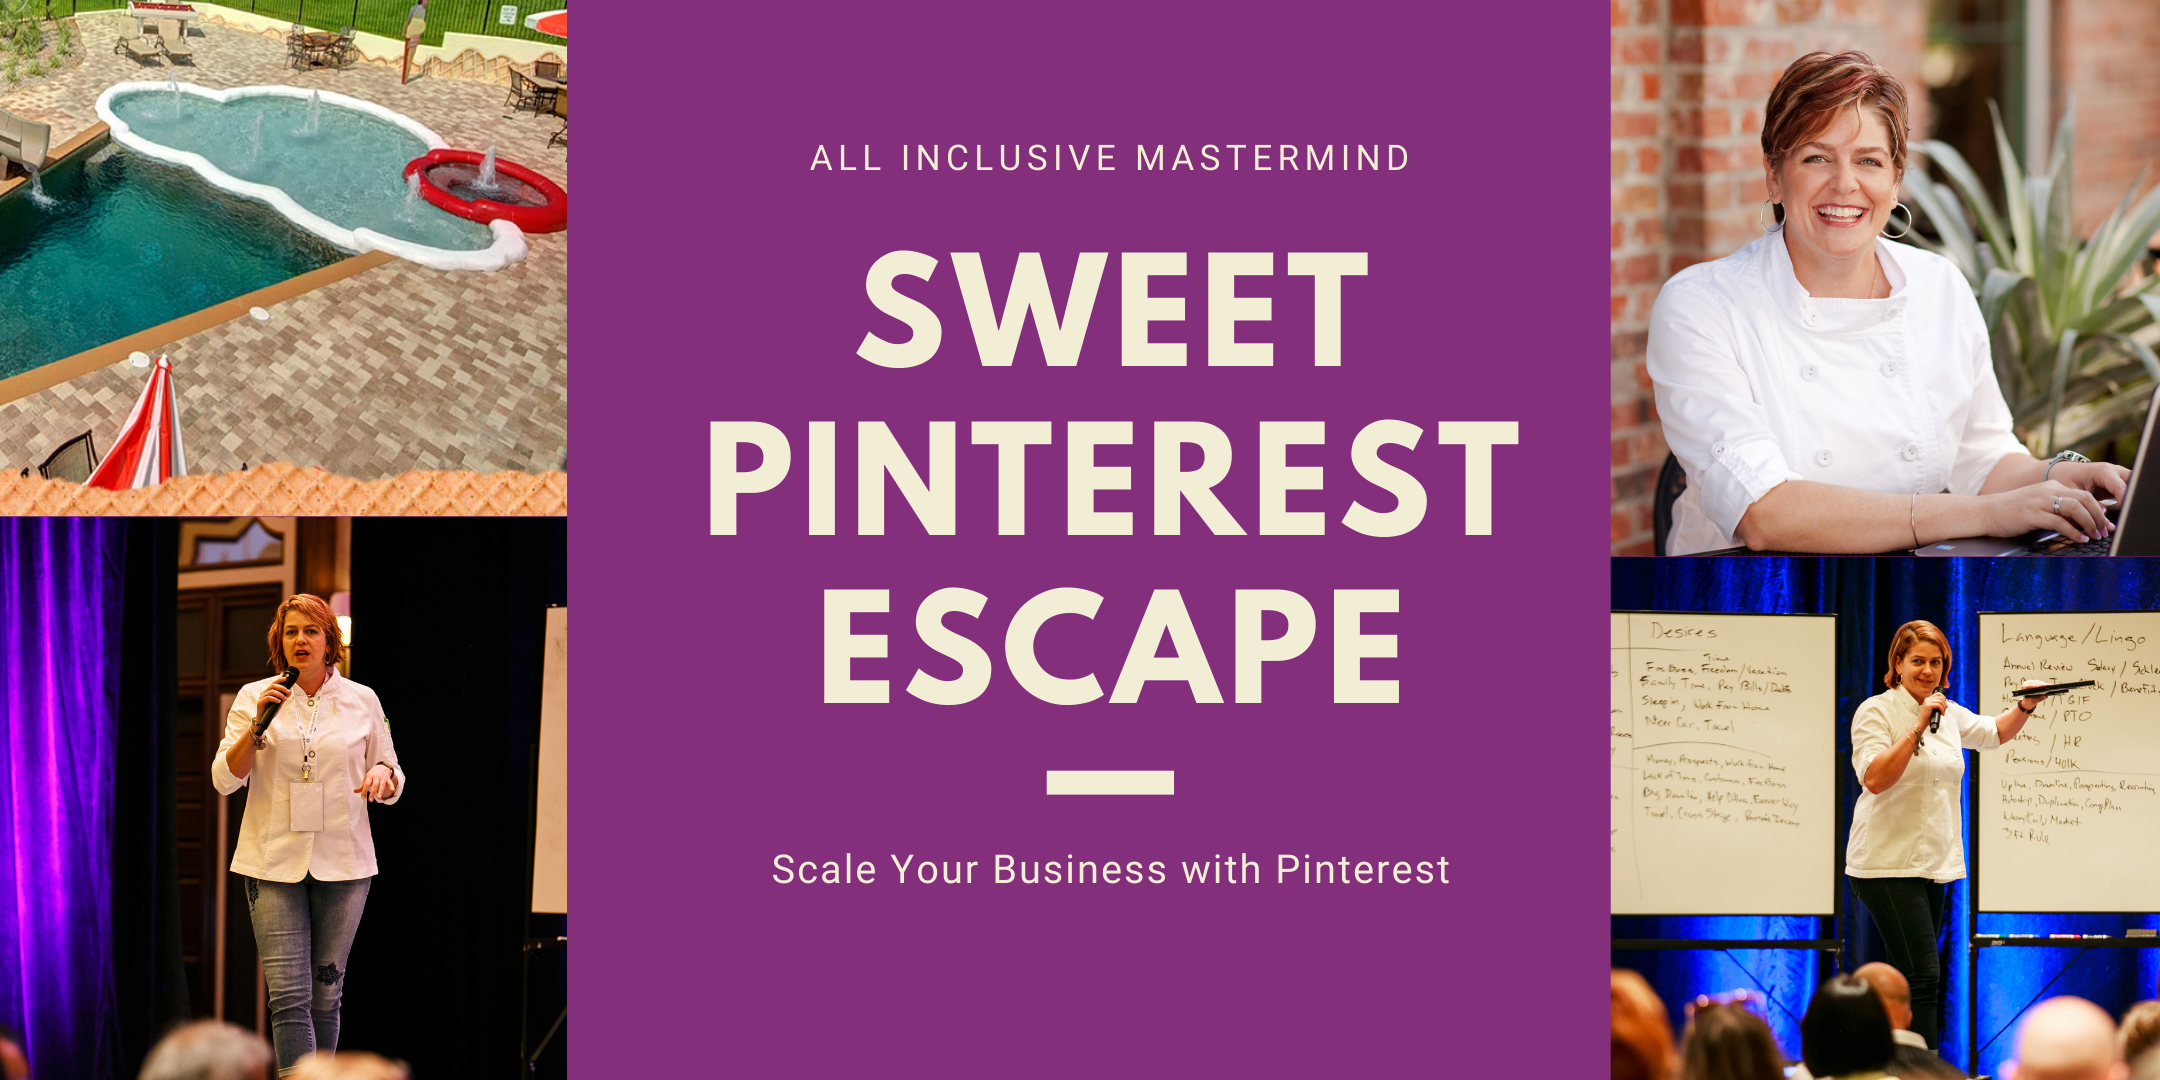 Sweet Pinterest Escape